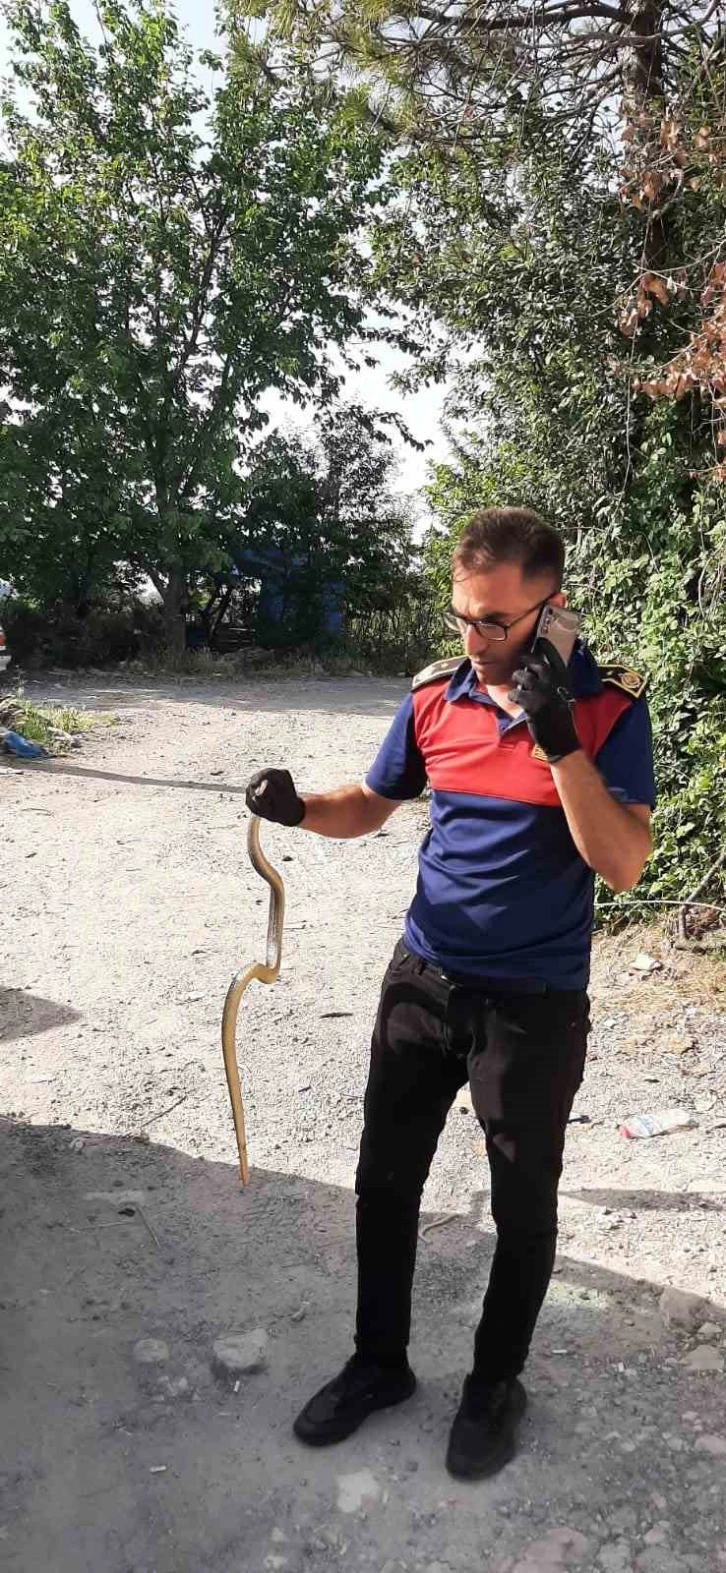 İş yerine giren yılanı itfaiye ekipleri yakalayıp doğaya saldı
